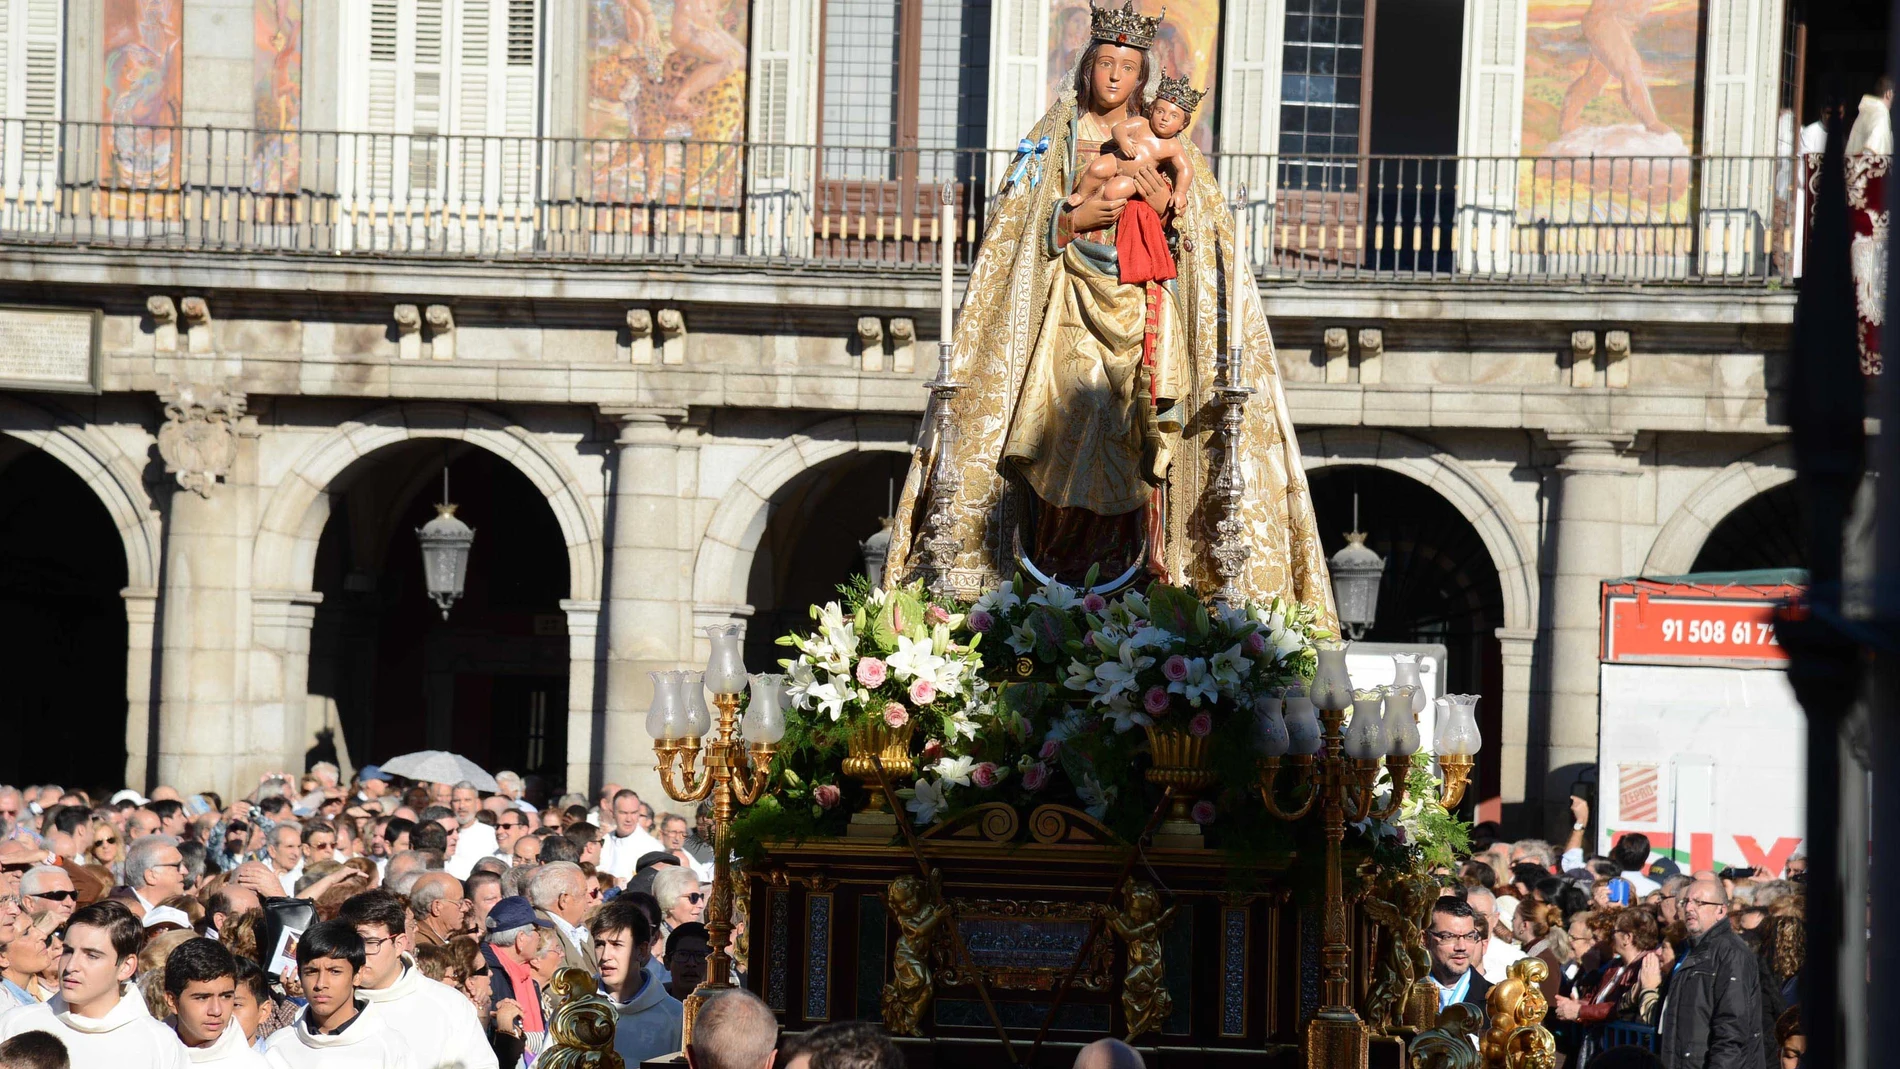 Música clásica, flores y dulces, actividades gratuitas para celebrar el día de la Almudena | Fuente: AYUNTAMIENTO DE MADRID